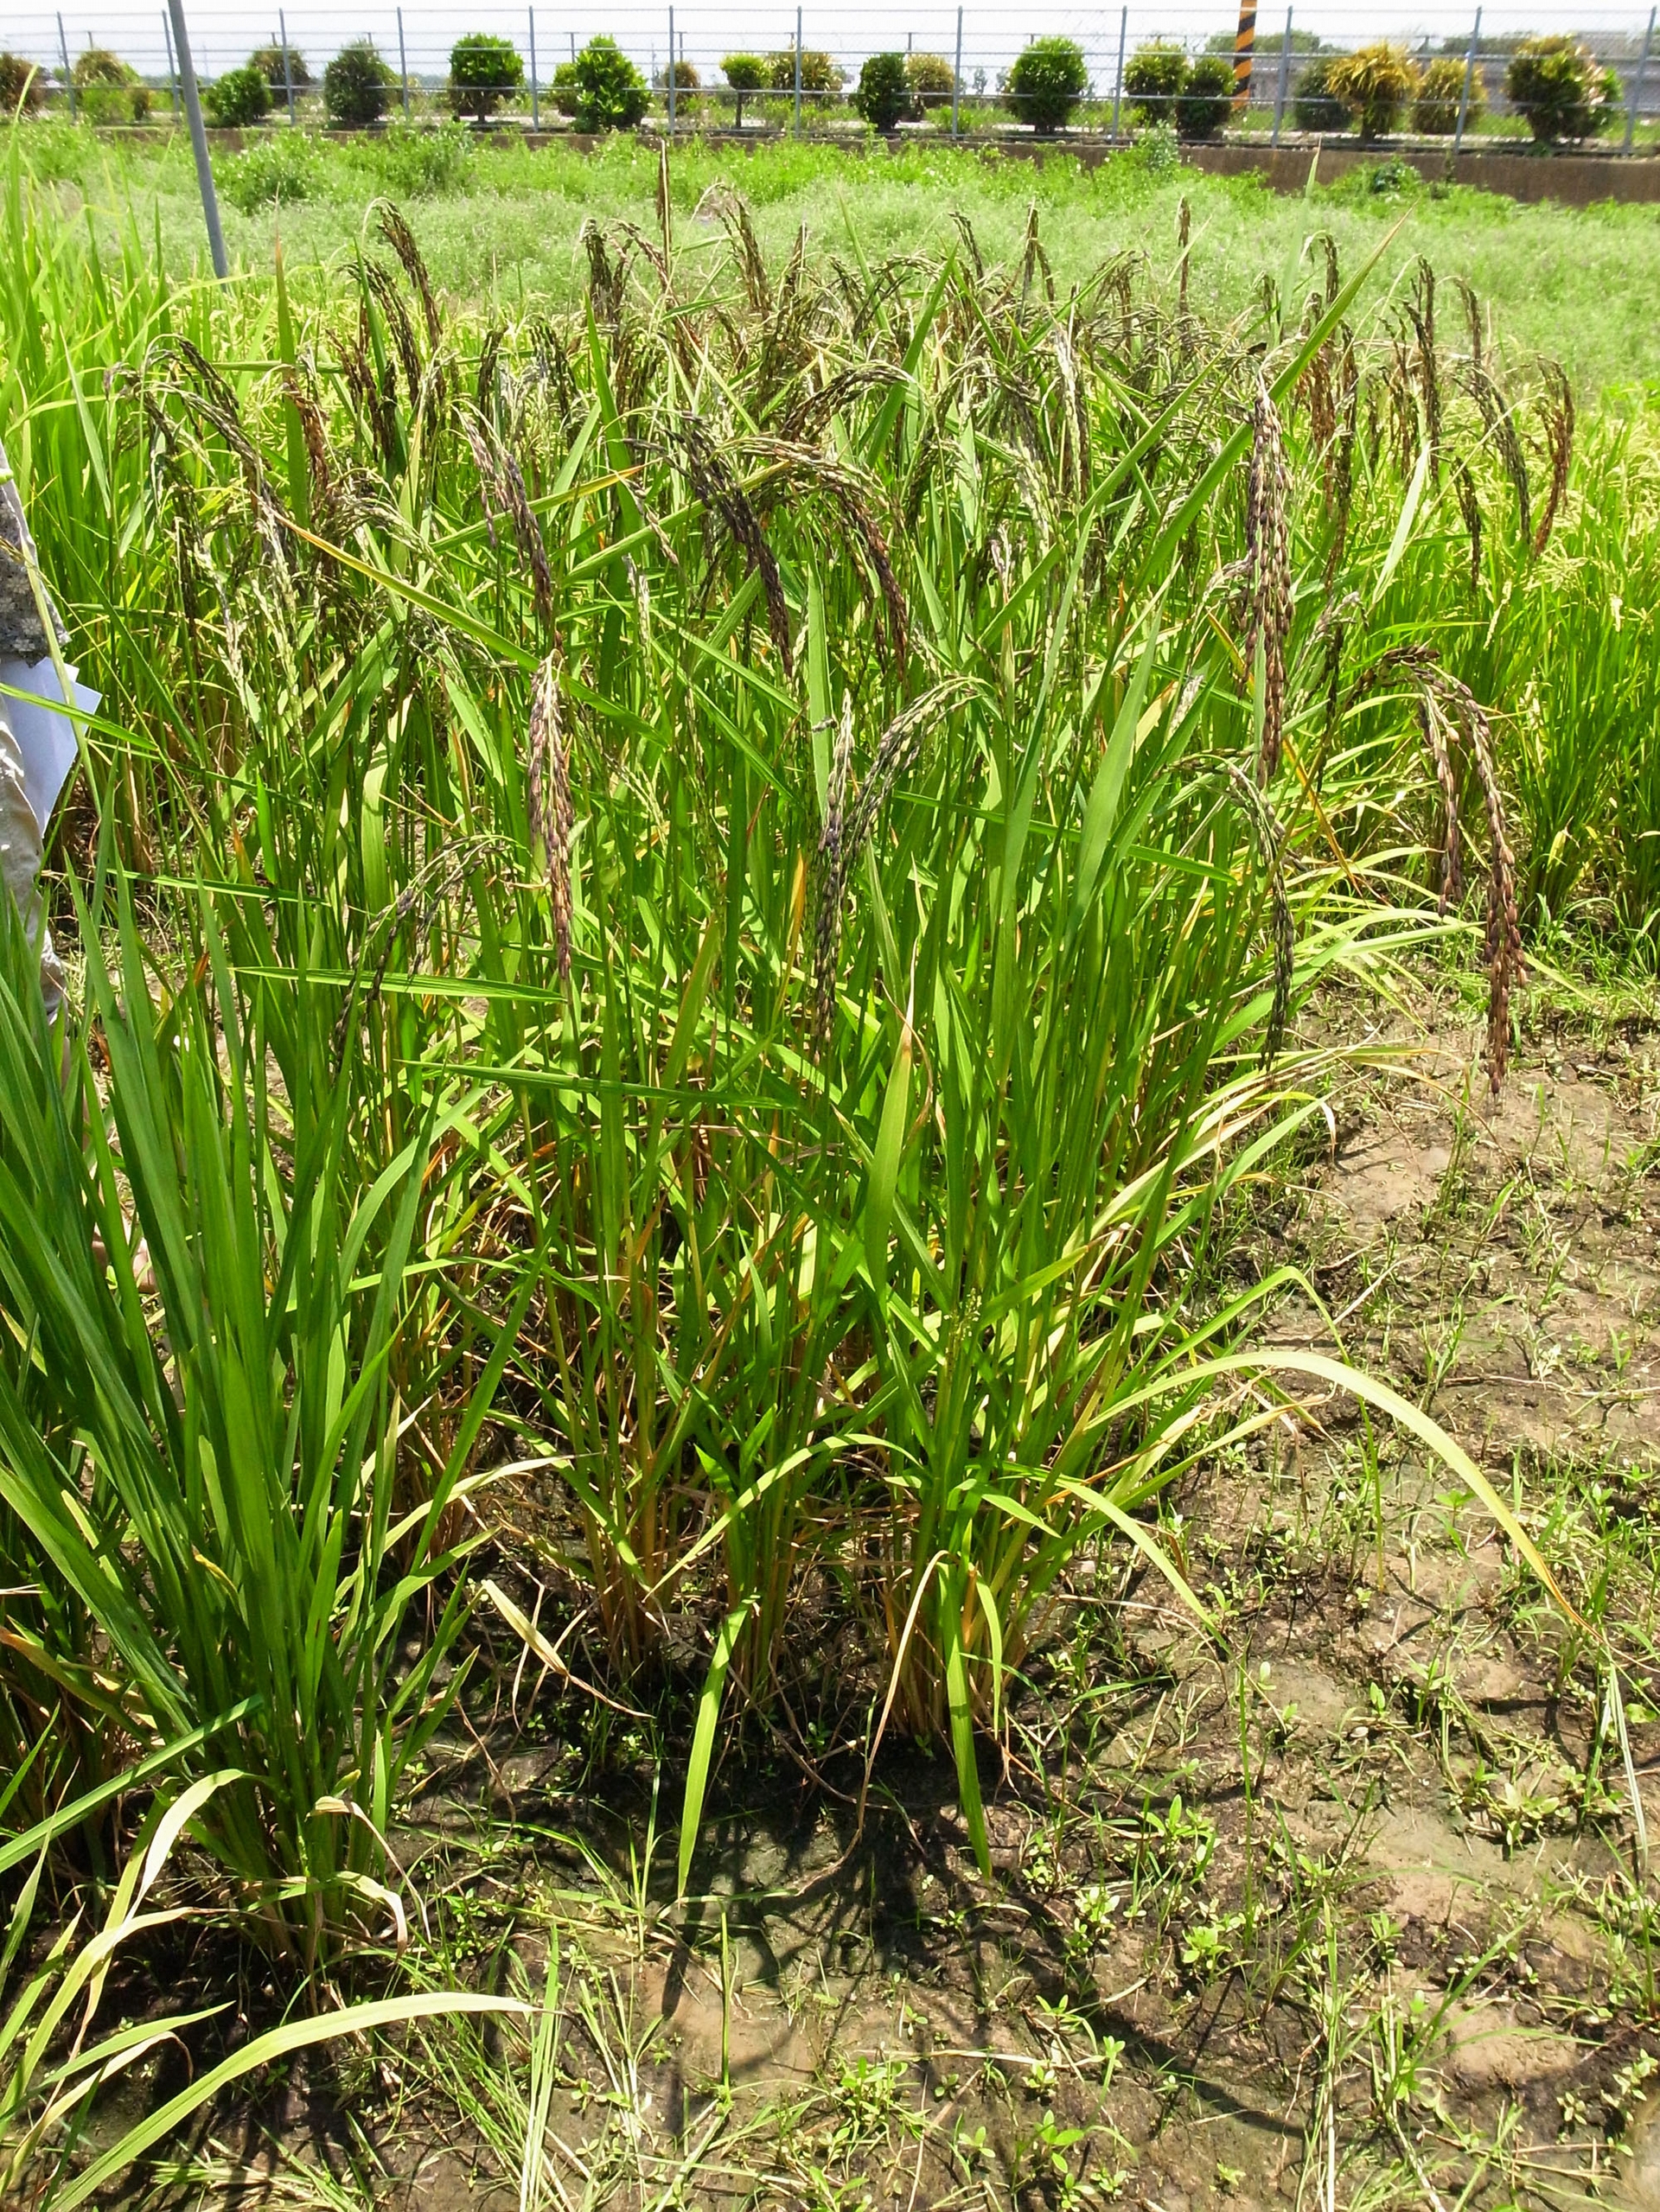 圖為山地陸稻。陸稻和水稻都是亞洲栽培稻 (Oryza sativa)，只是種在水田的叫水稻，種植在旱地的就是陸稻了。 <br>圖片來源│邢禹依 